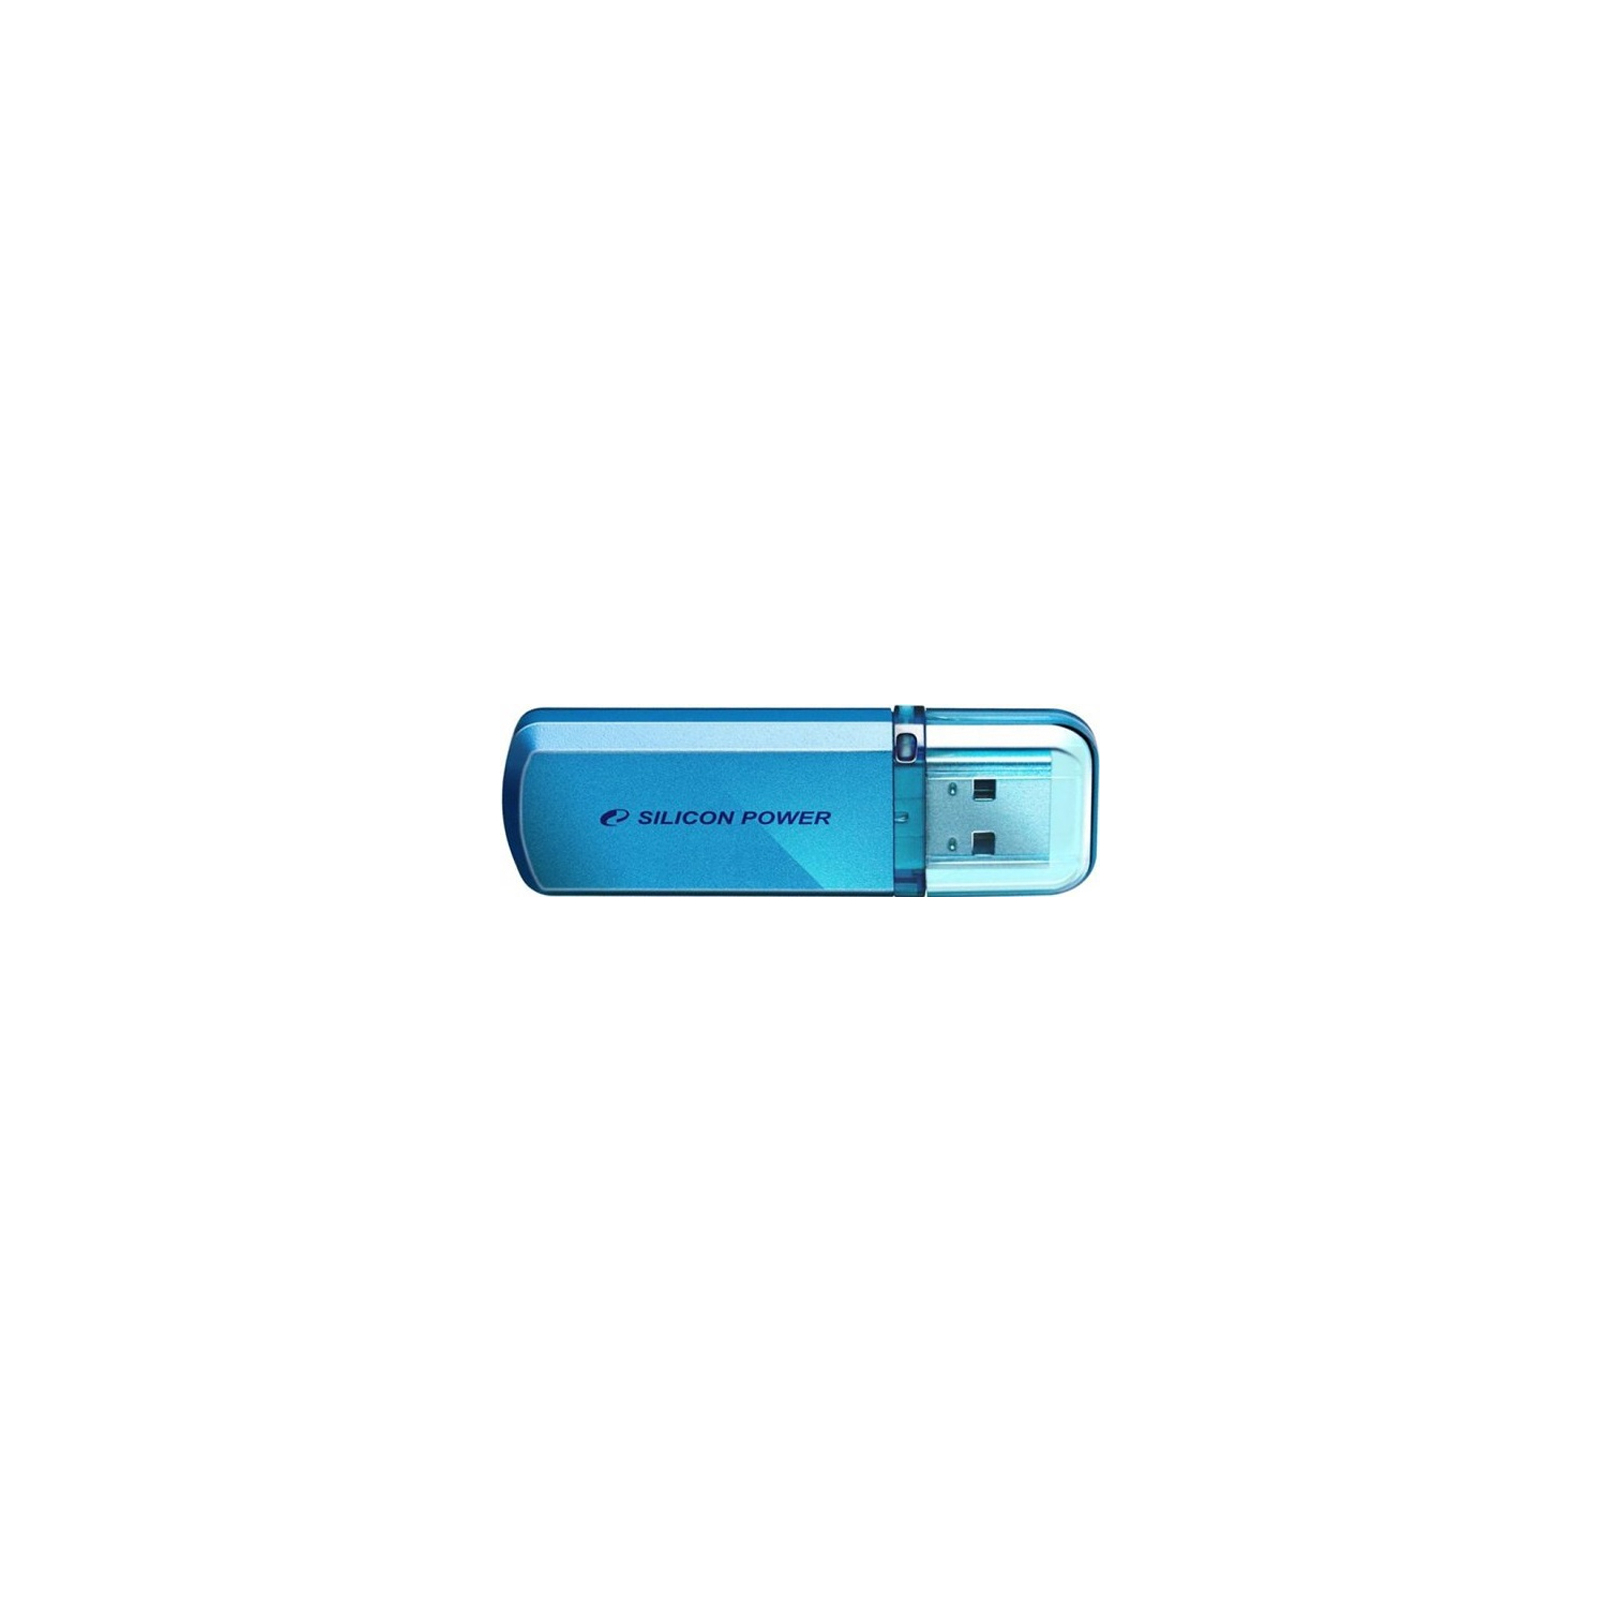 USB флеш накопитель Silicon Power 64GB Helios 101 Blue USB 2.0 (SP064GBUF2101V1B)